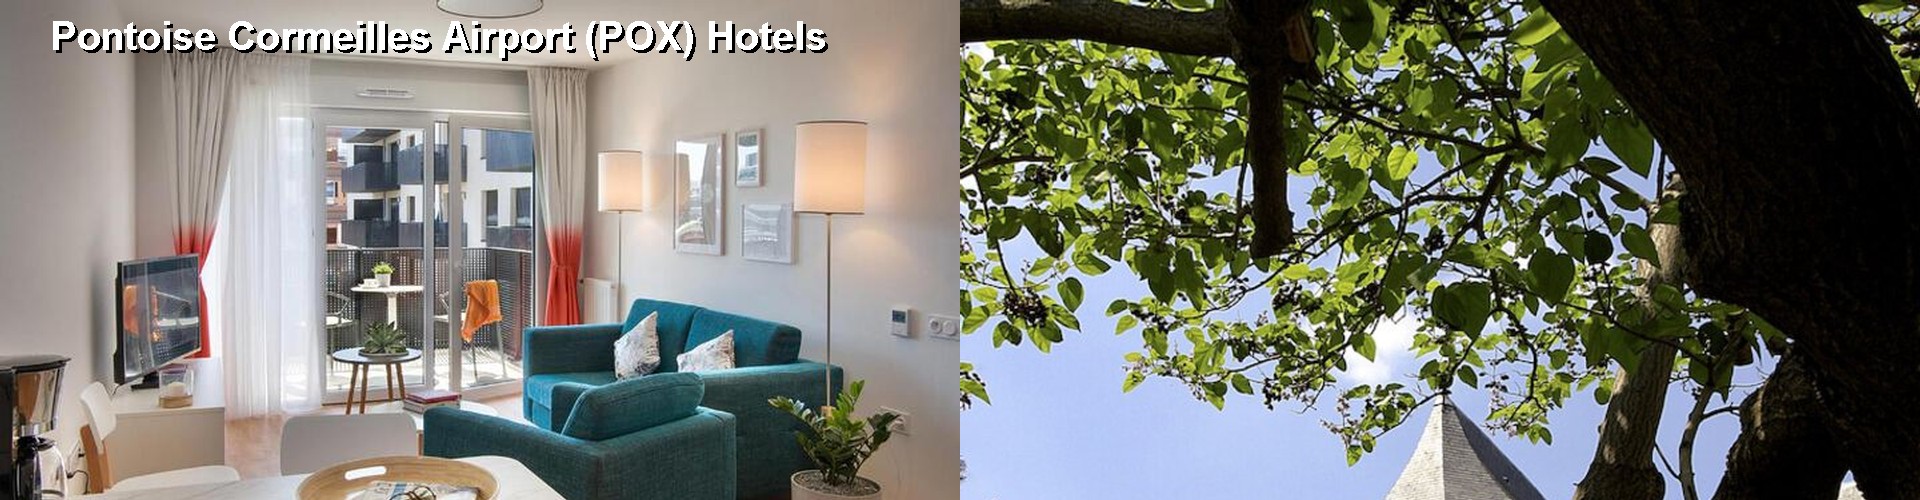 2 Best Hotels near Pontoise Cormeilles Airport (POX)